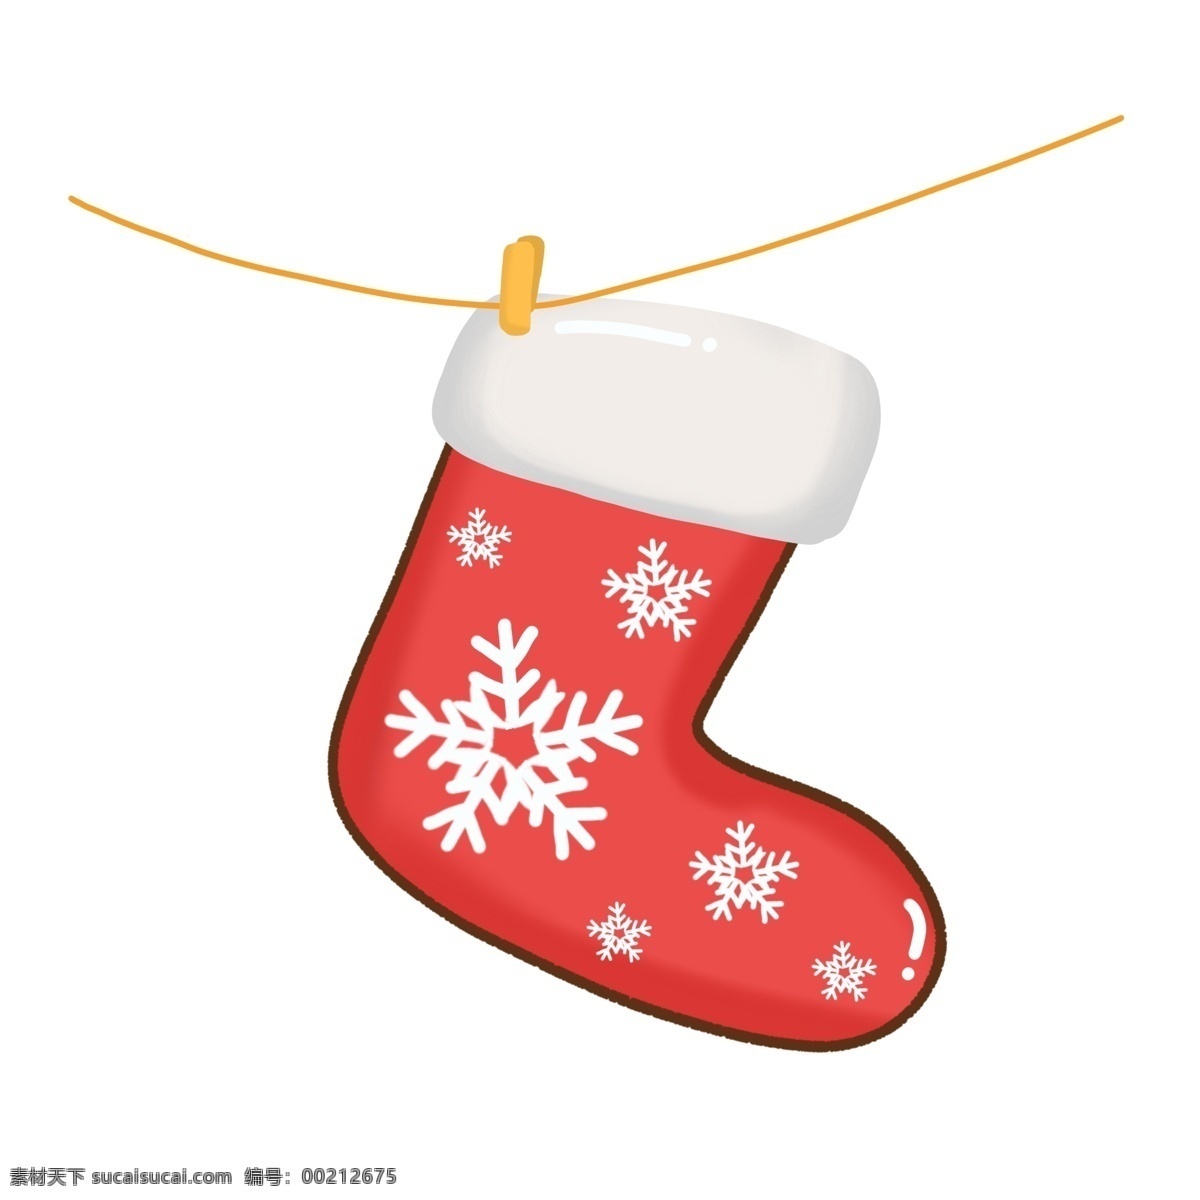 手绘 圣诞节 装饰 可爱 圣诞 袜 元素 袜子 麋鹿 圣诞装饰 雪花 圣诞袜 圣诞节袜子 可爱袜子 圣诞鹿 小鹿 可爱圣诞鹿 铃铛 饼干小人 圣诞节装饰